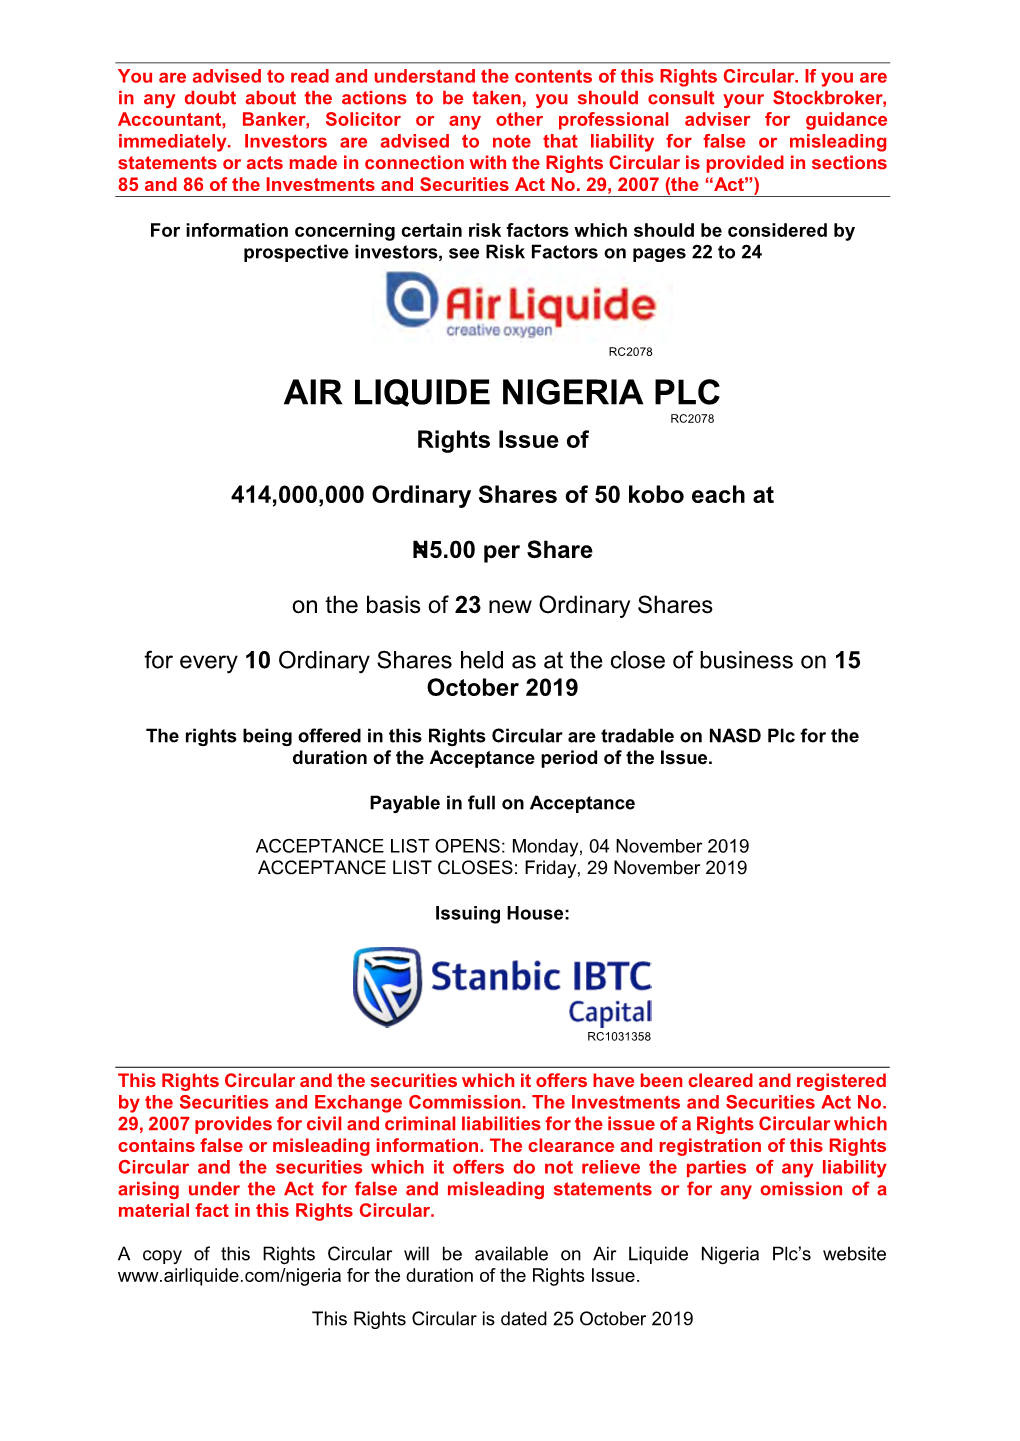 Following Document Regarding Air Liquide Nigeria